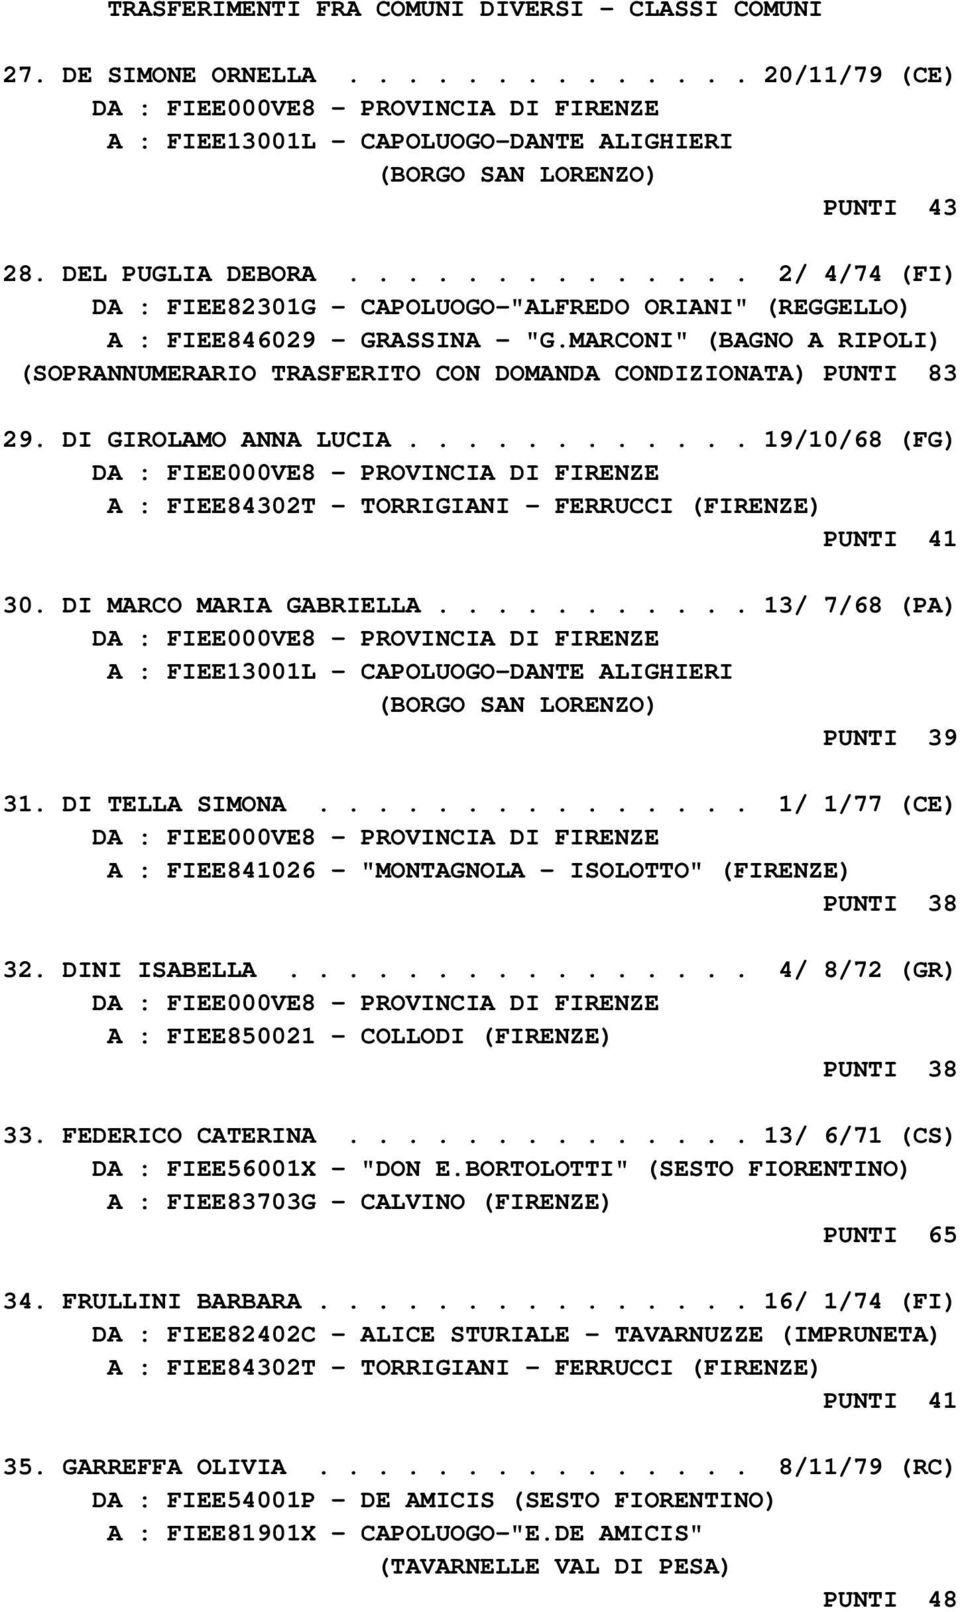 MARCONI" (BAGNO A RIPOLI) (SOPRANNUMERARIO TRASFERITO CON DOMANDA CONDIZIONATA) PUNTI 83 29. DI GIROLAMO ANNA LUCIA............ 19/10/68 (FG) A : FIEE84302T - TORRIGIANI - FERRUCCI (FIRENZE) PUNTI 41 30.